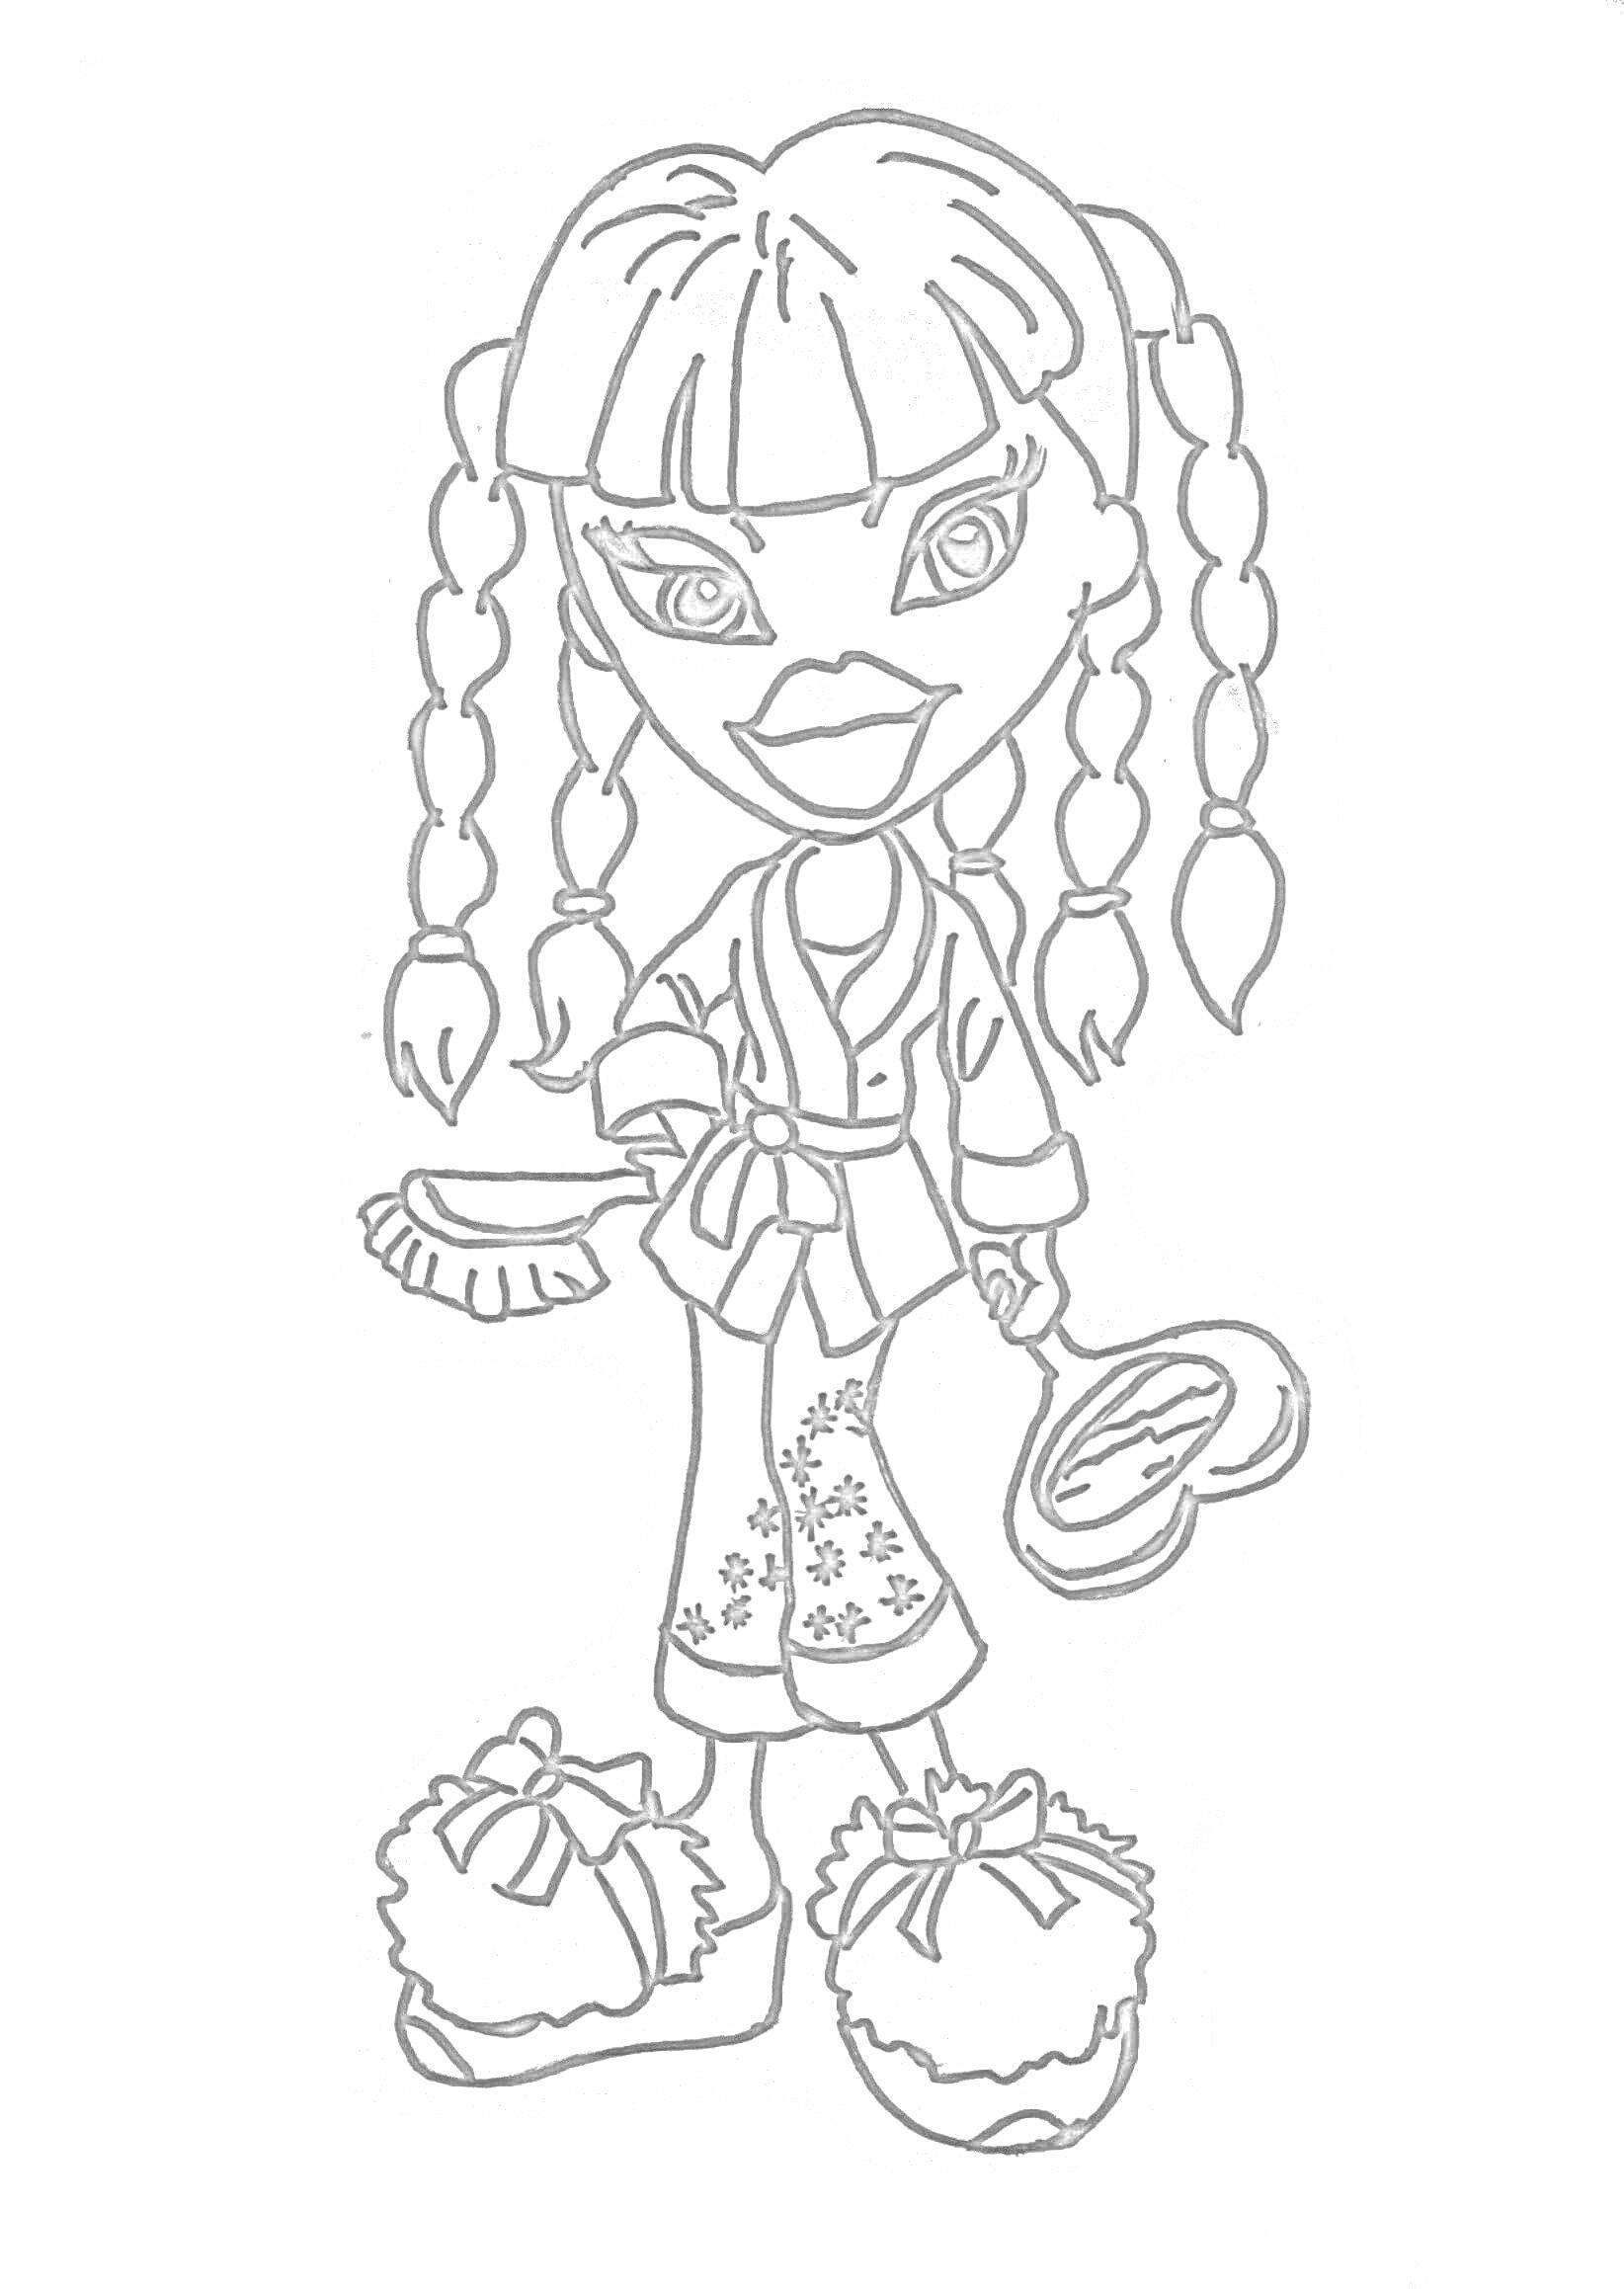 Раскраска Девушка Братц с косичками в халате и тапочках с помпонами, держит щётку и зеркало